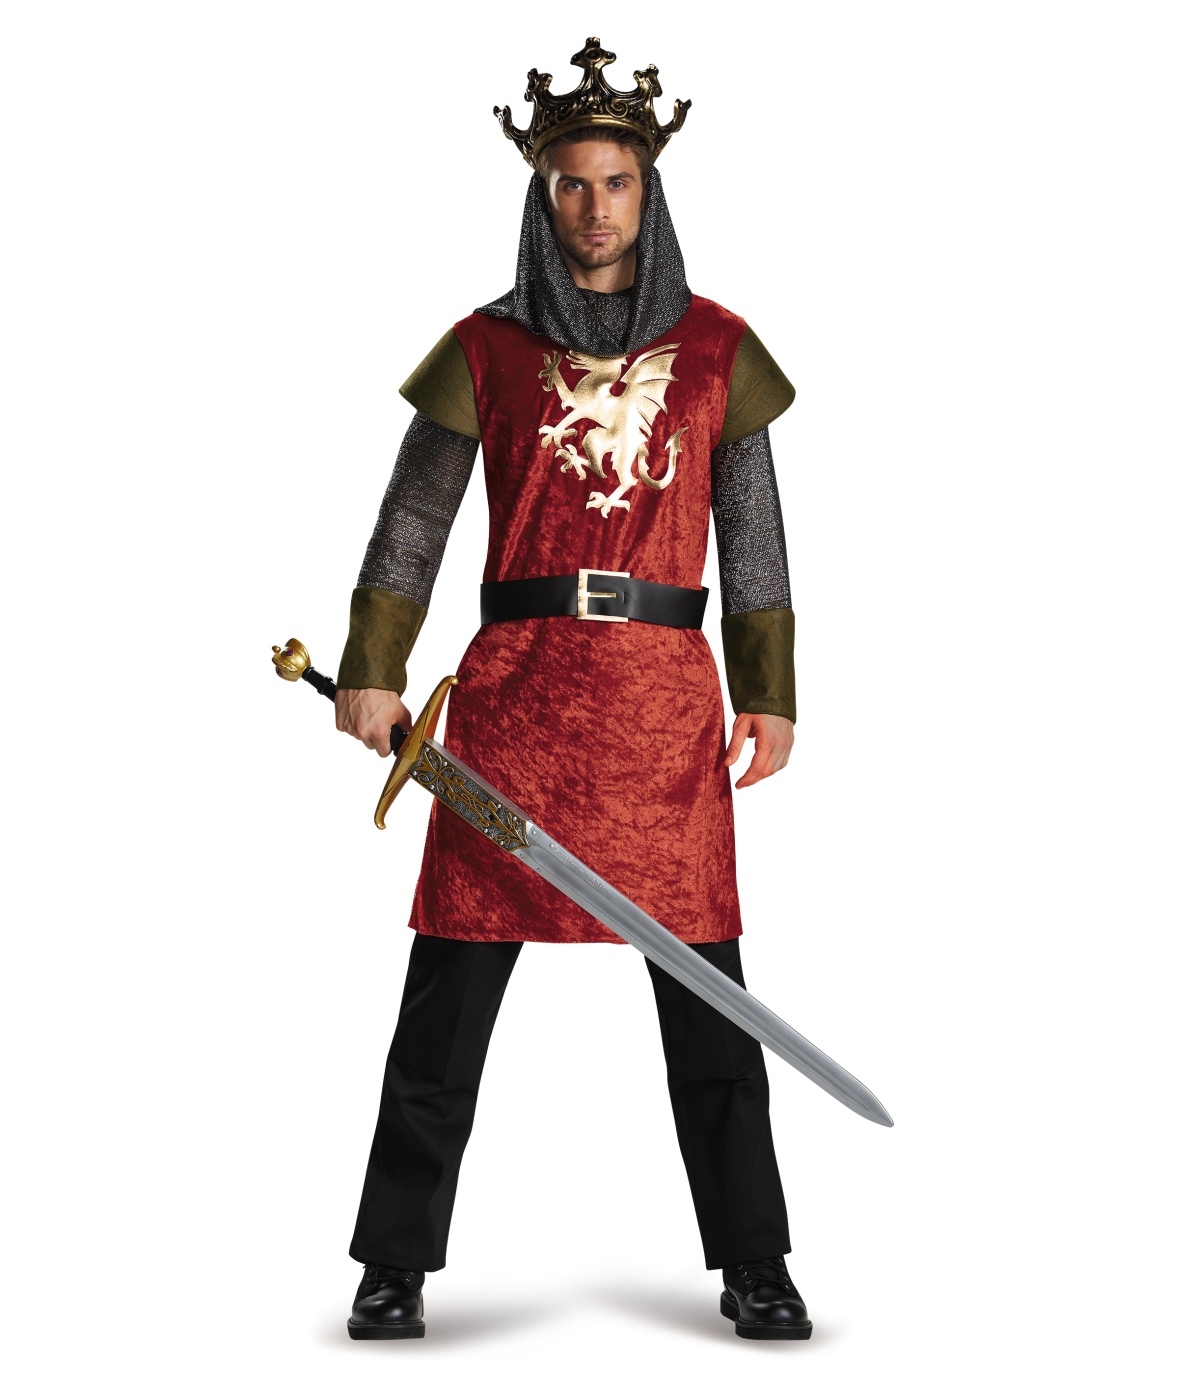 Рыцарь царский. Одежда короля средневековья. Костюм короля Артура. Средневековая одежда мужская Королевская. Король средневековья в полный рост.